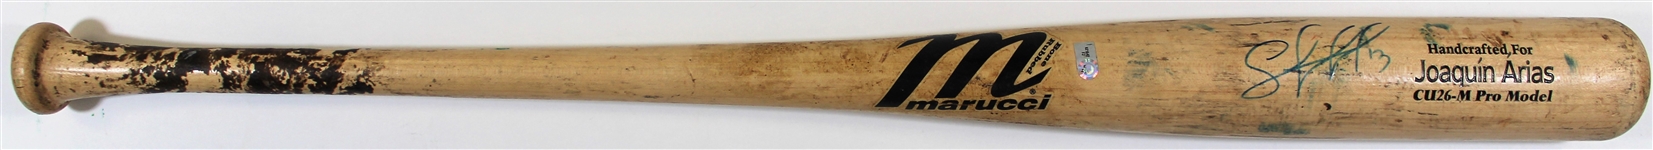 2011 Salvador Perez Game Used Royals Bat MLB FJ 621642 